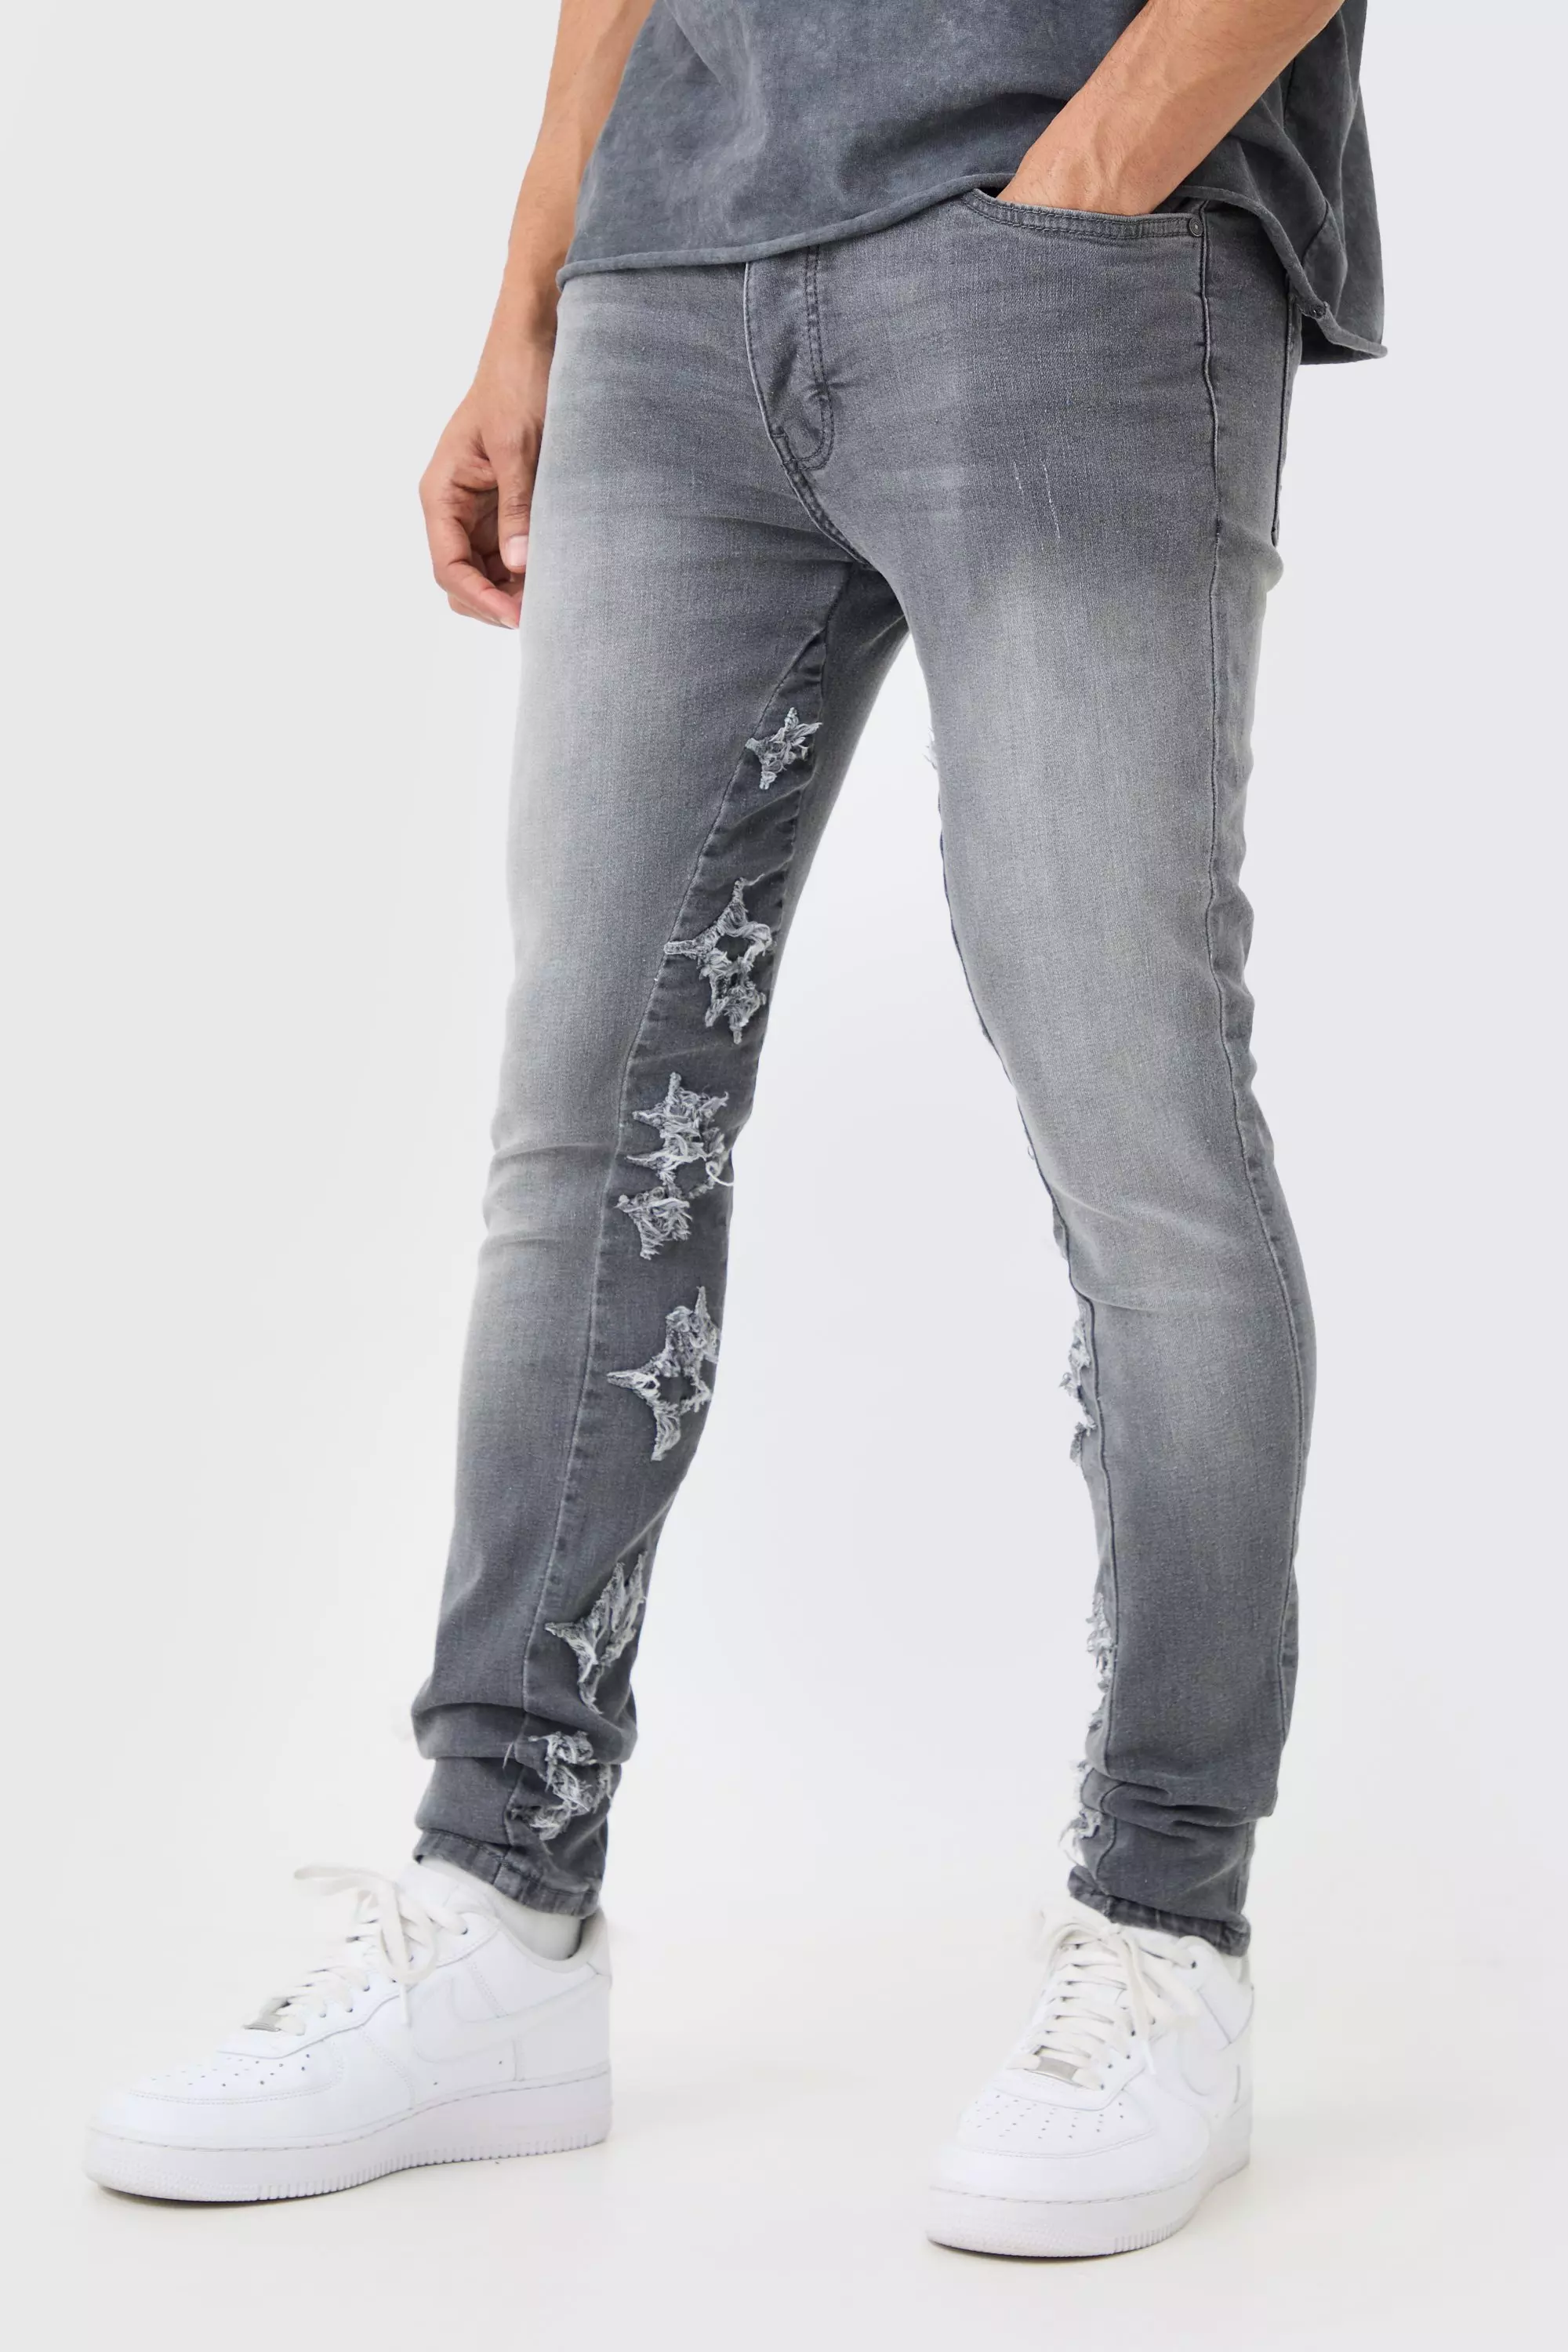 Men's Grey Skinny Jeans